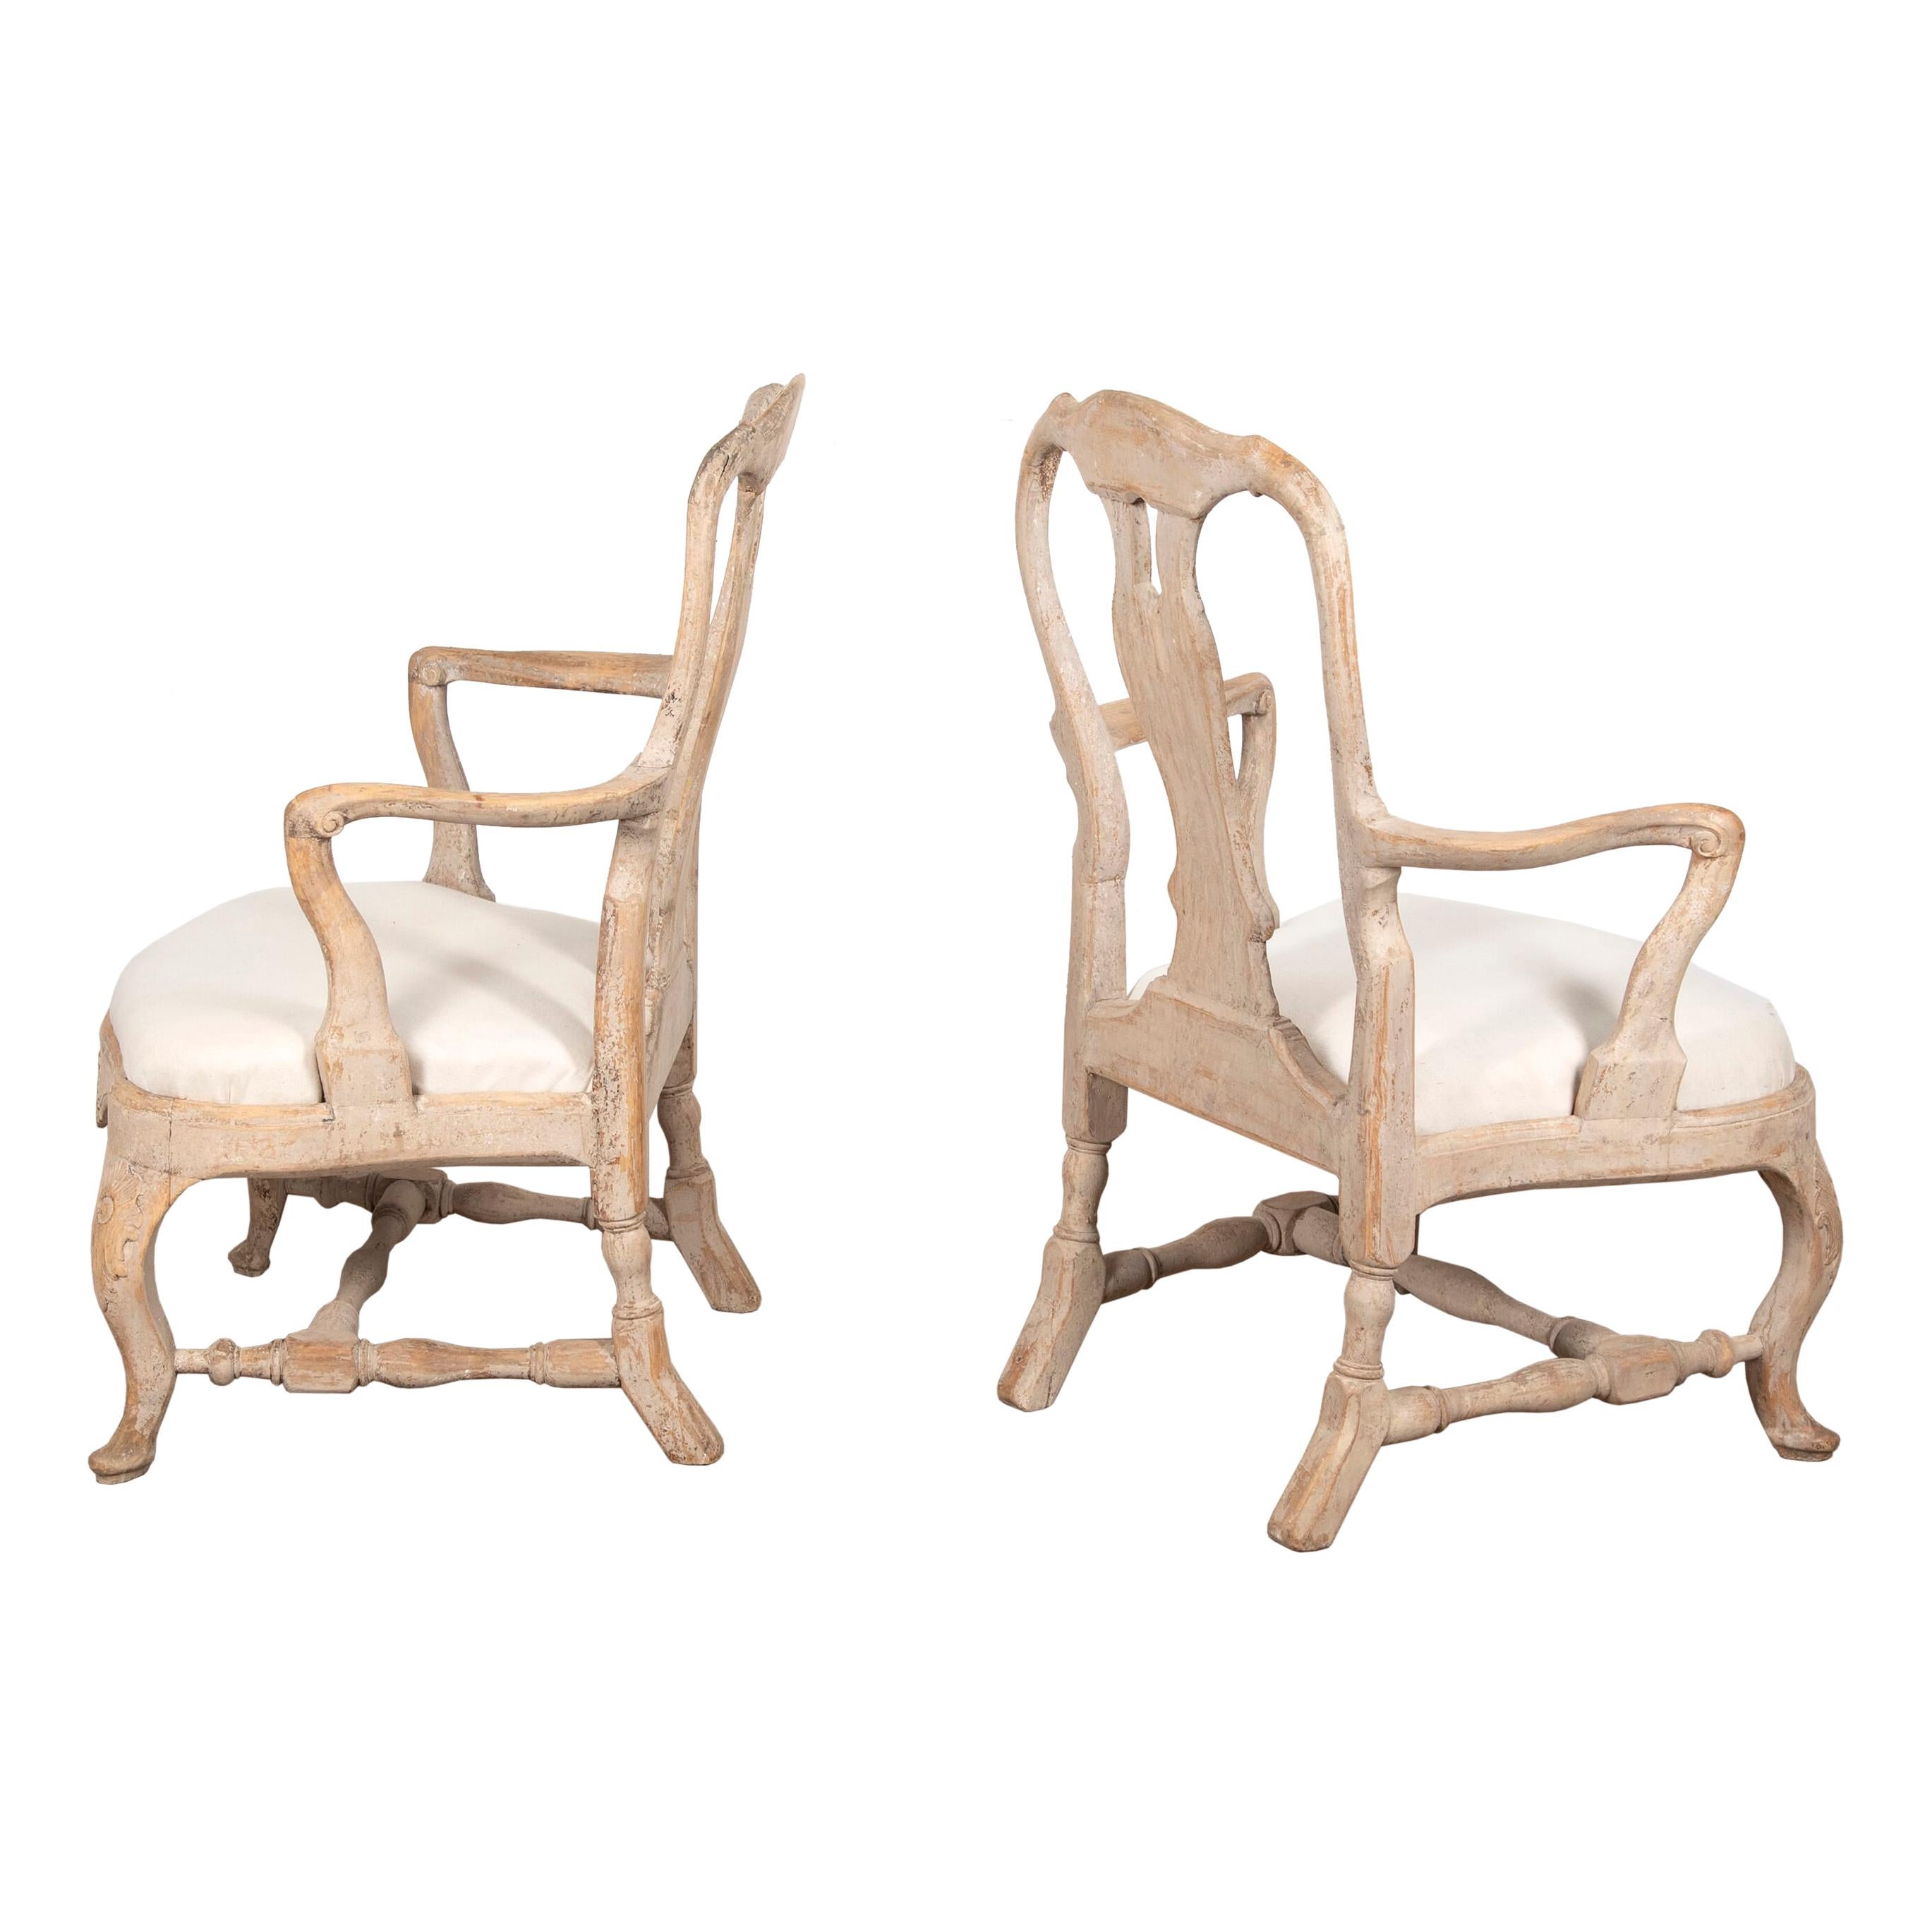 Paire de fauteuils du XVIIIe siècle, fabriqués à Stockholm, avec dossier sculpté.
Avec des sièges profonds, des pieds de cabriolet et des sièges en lin belge magnifiquement rembourrés. Repeint dans une peinture blanche typique.